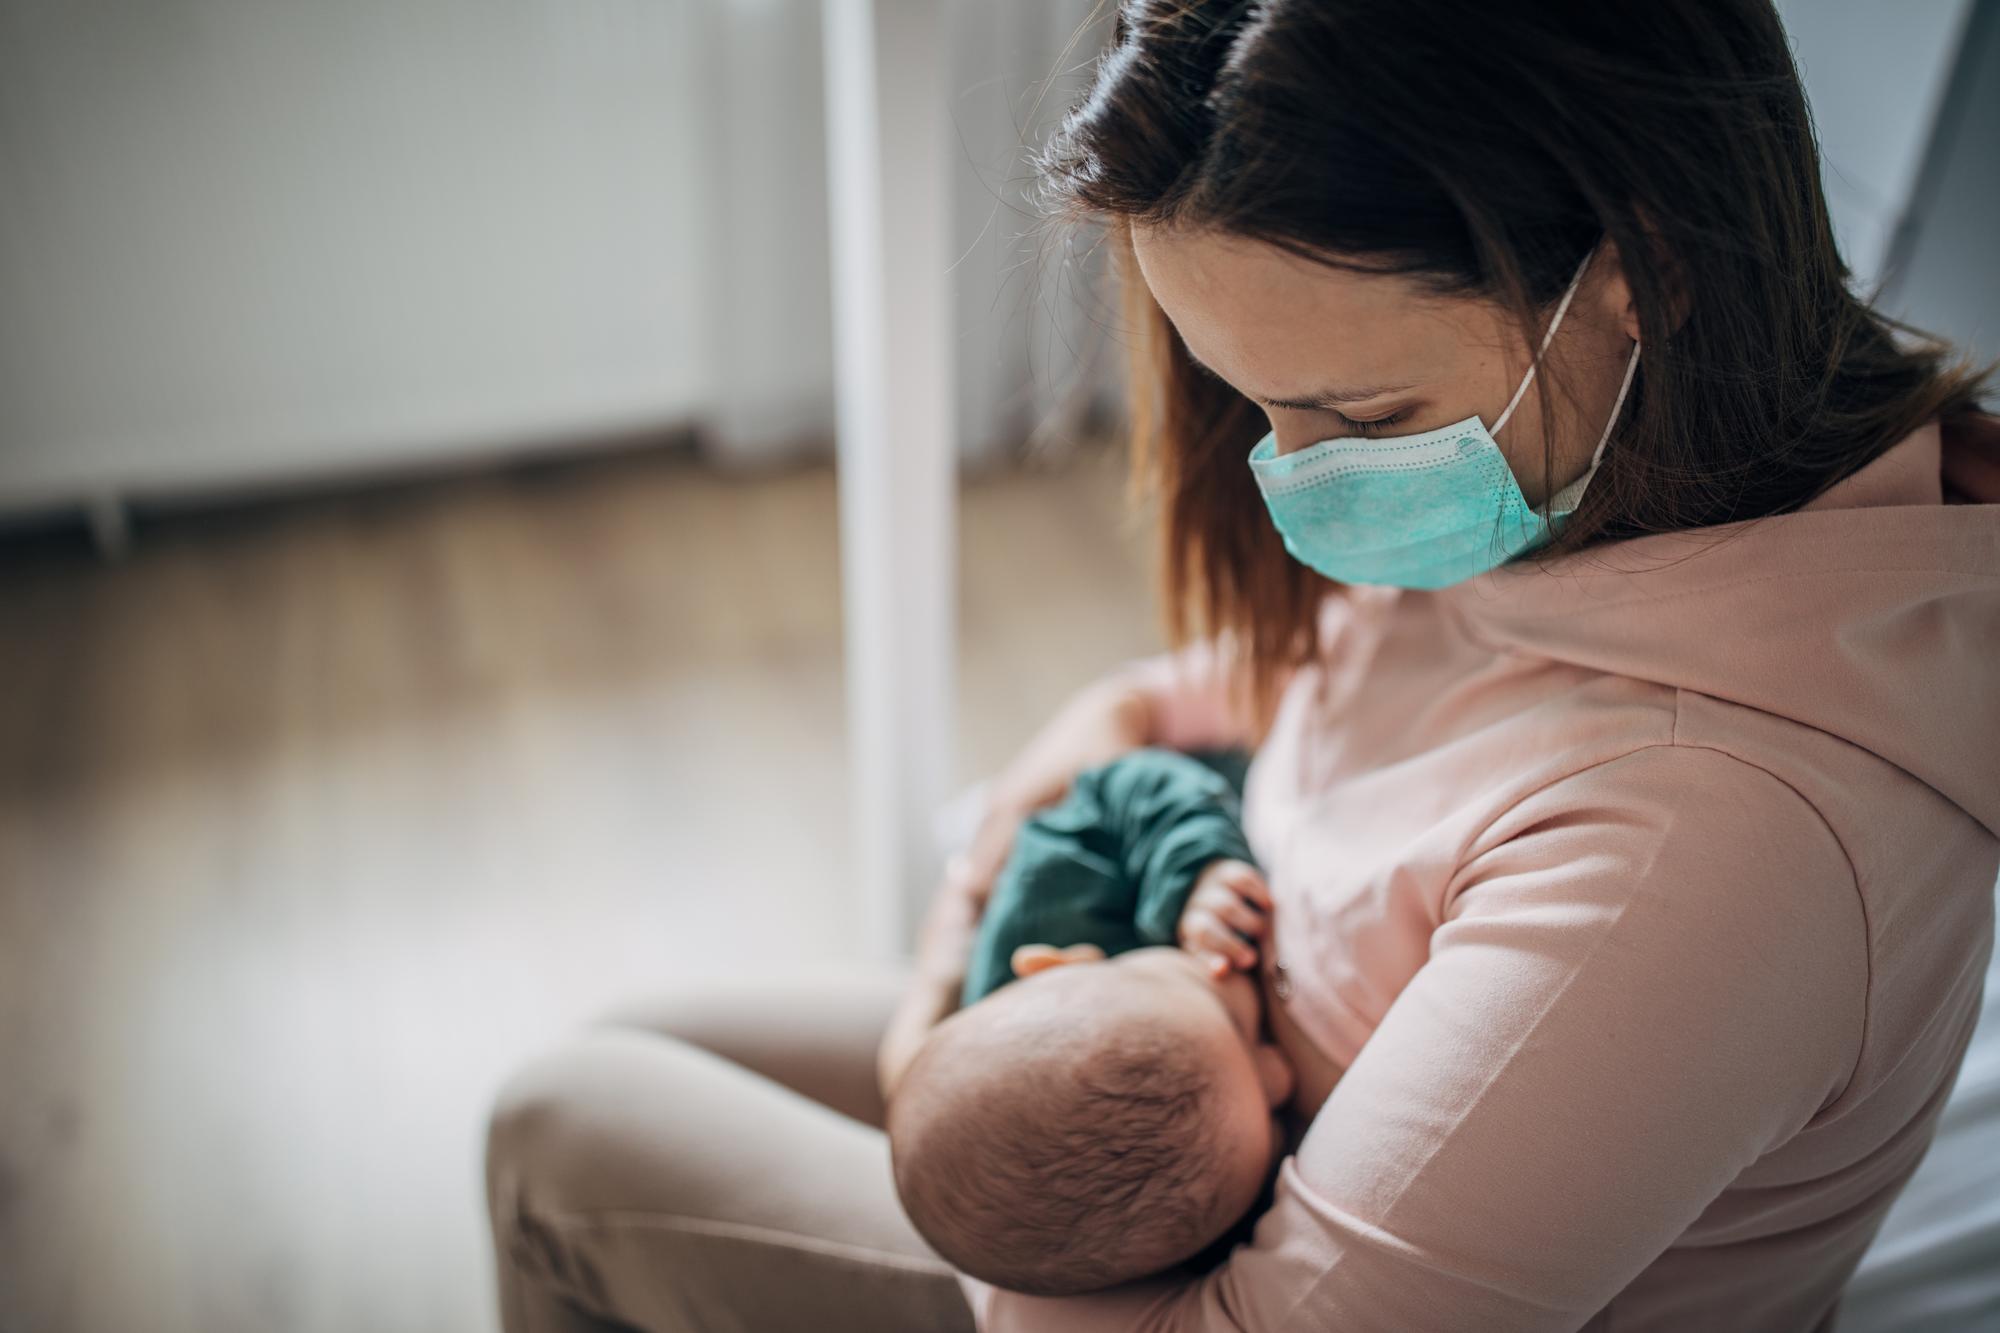 Koronavírus a dojčenie: Môže sa ochorenie COVID-19 preniesť cez materské  mlieko? | Najmama.sk